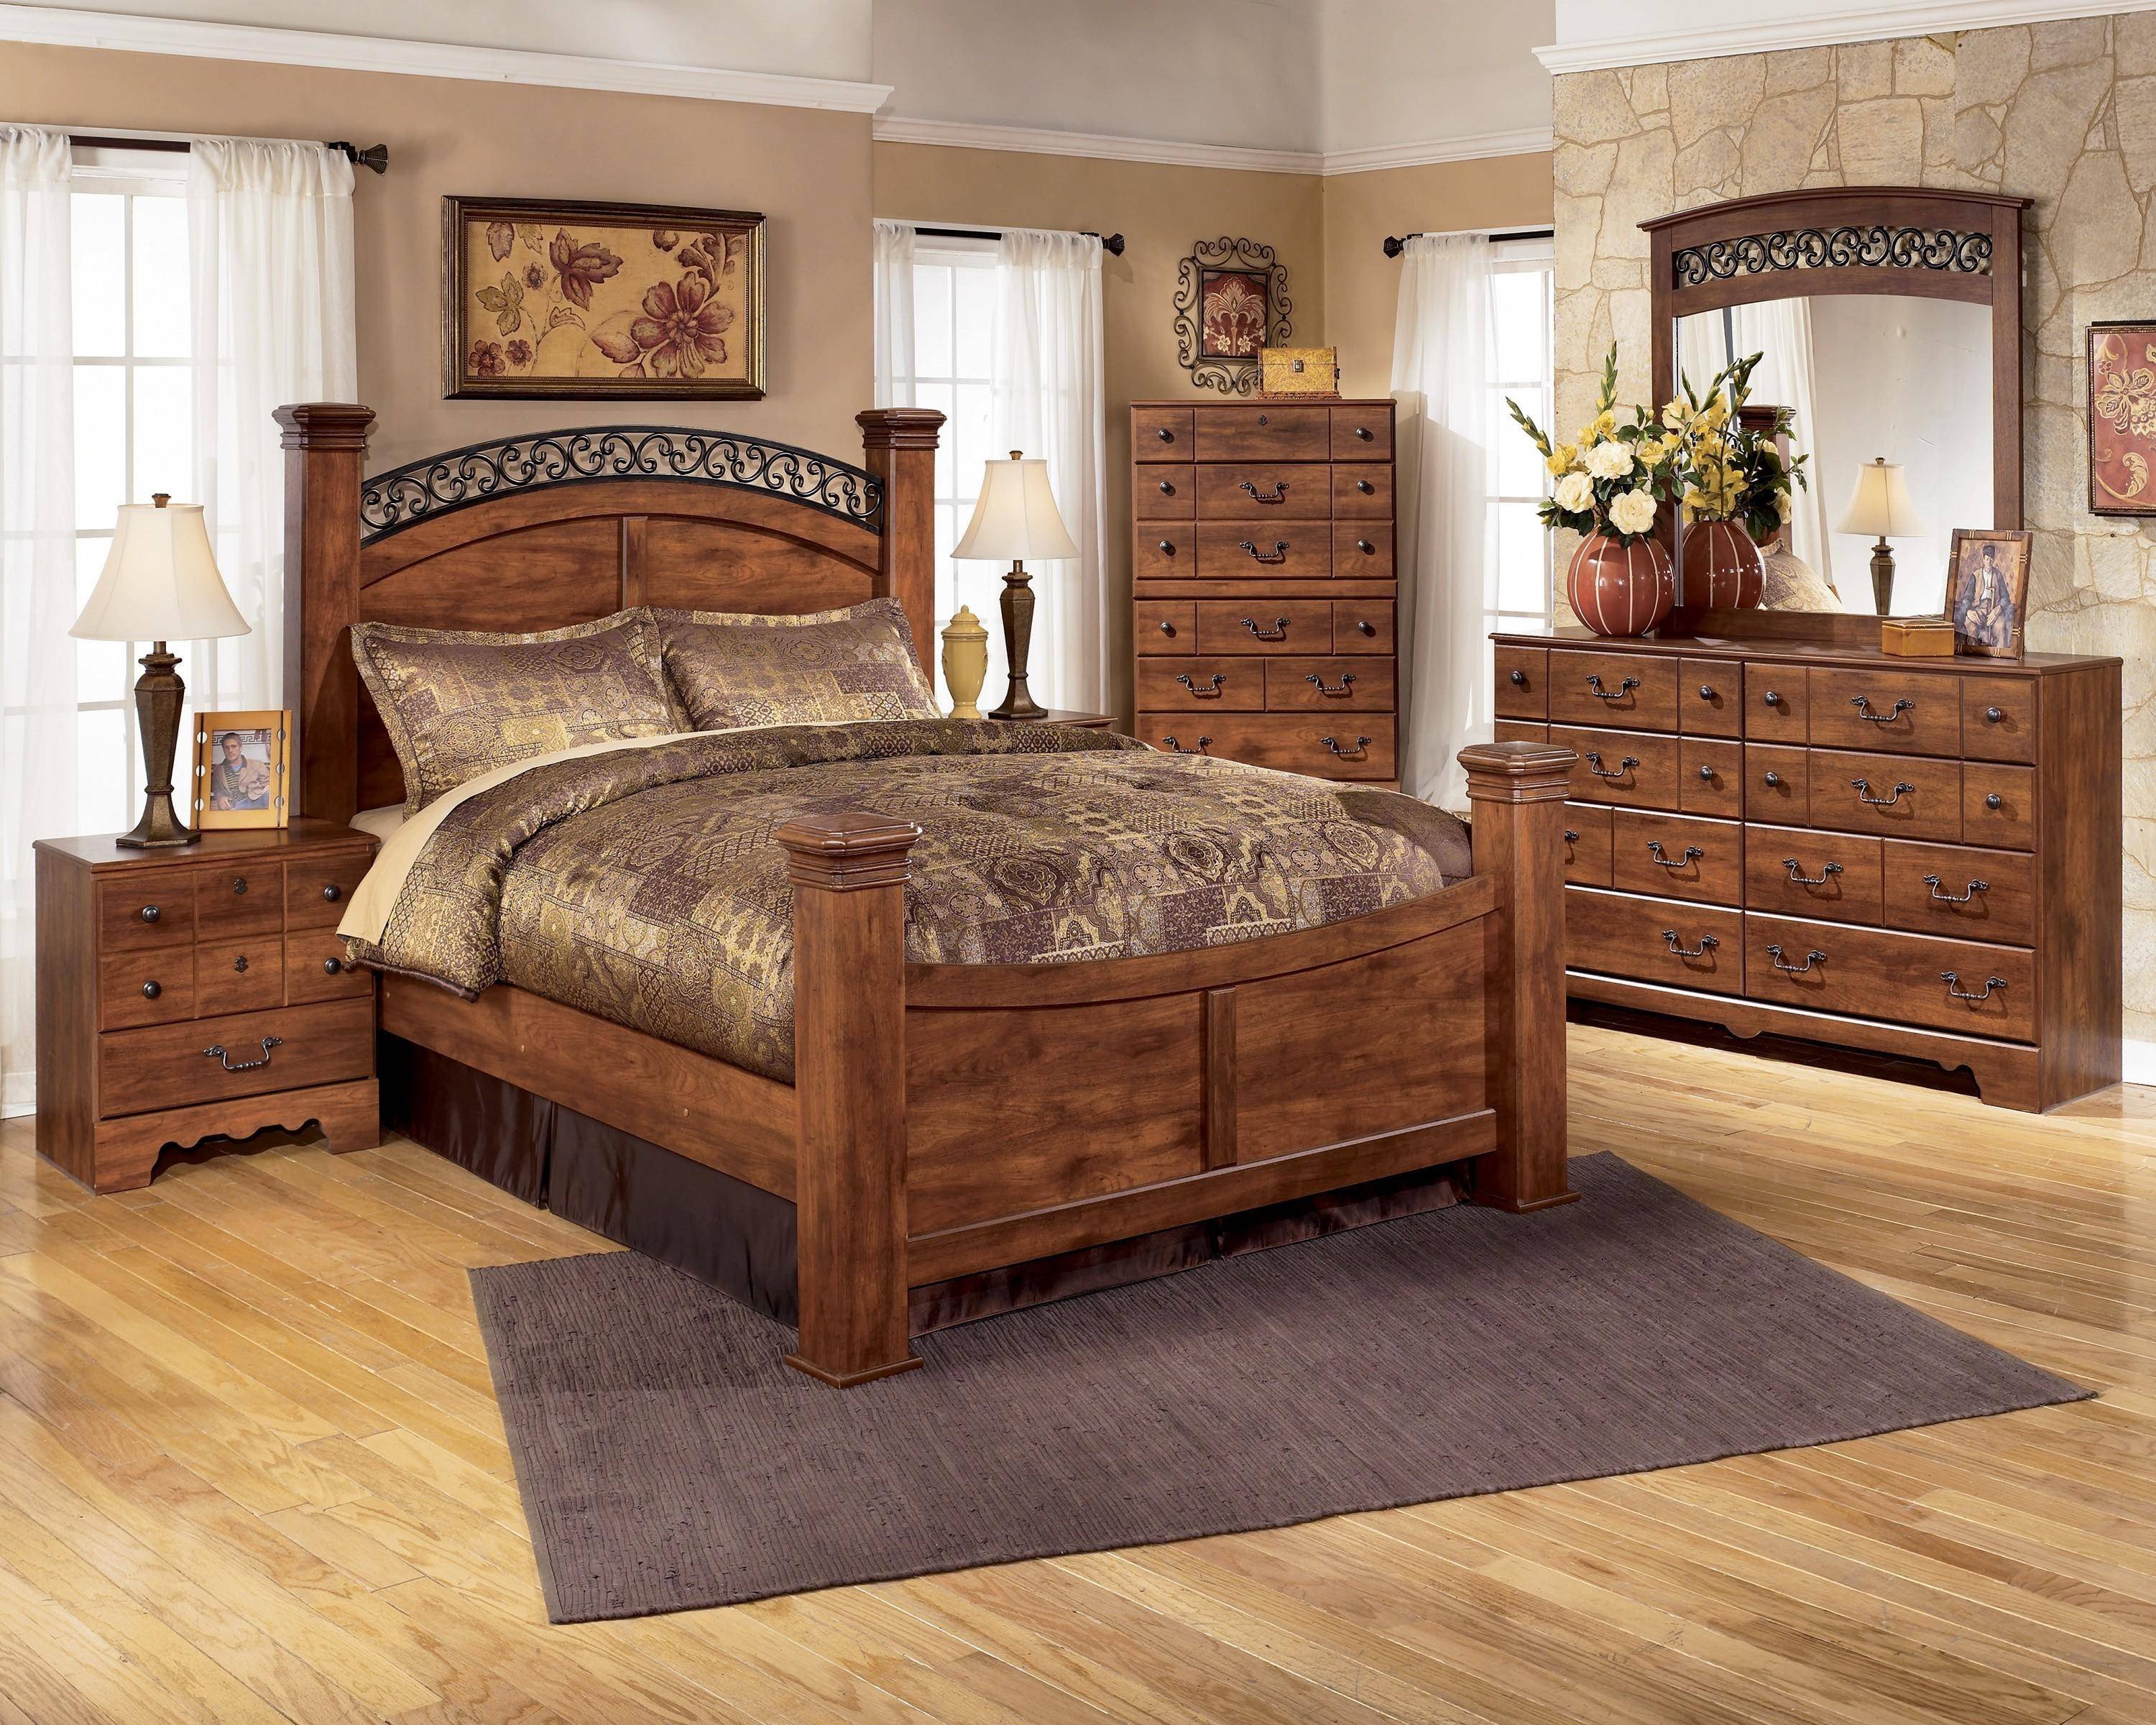 king size bed bedroom furniture set